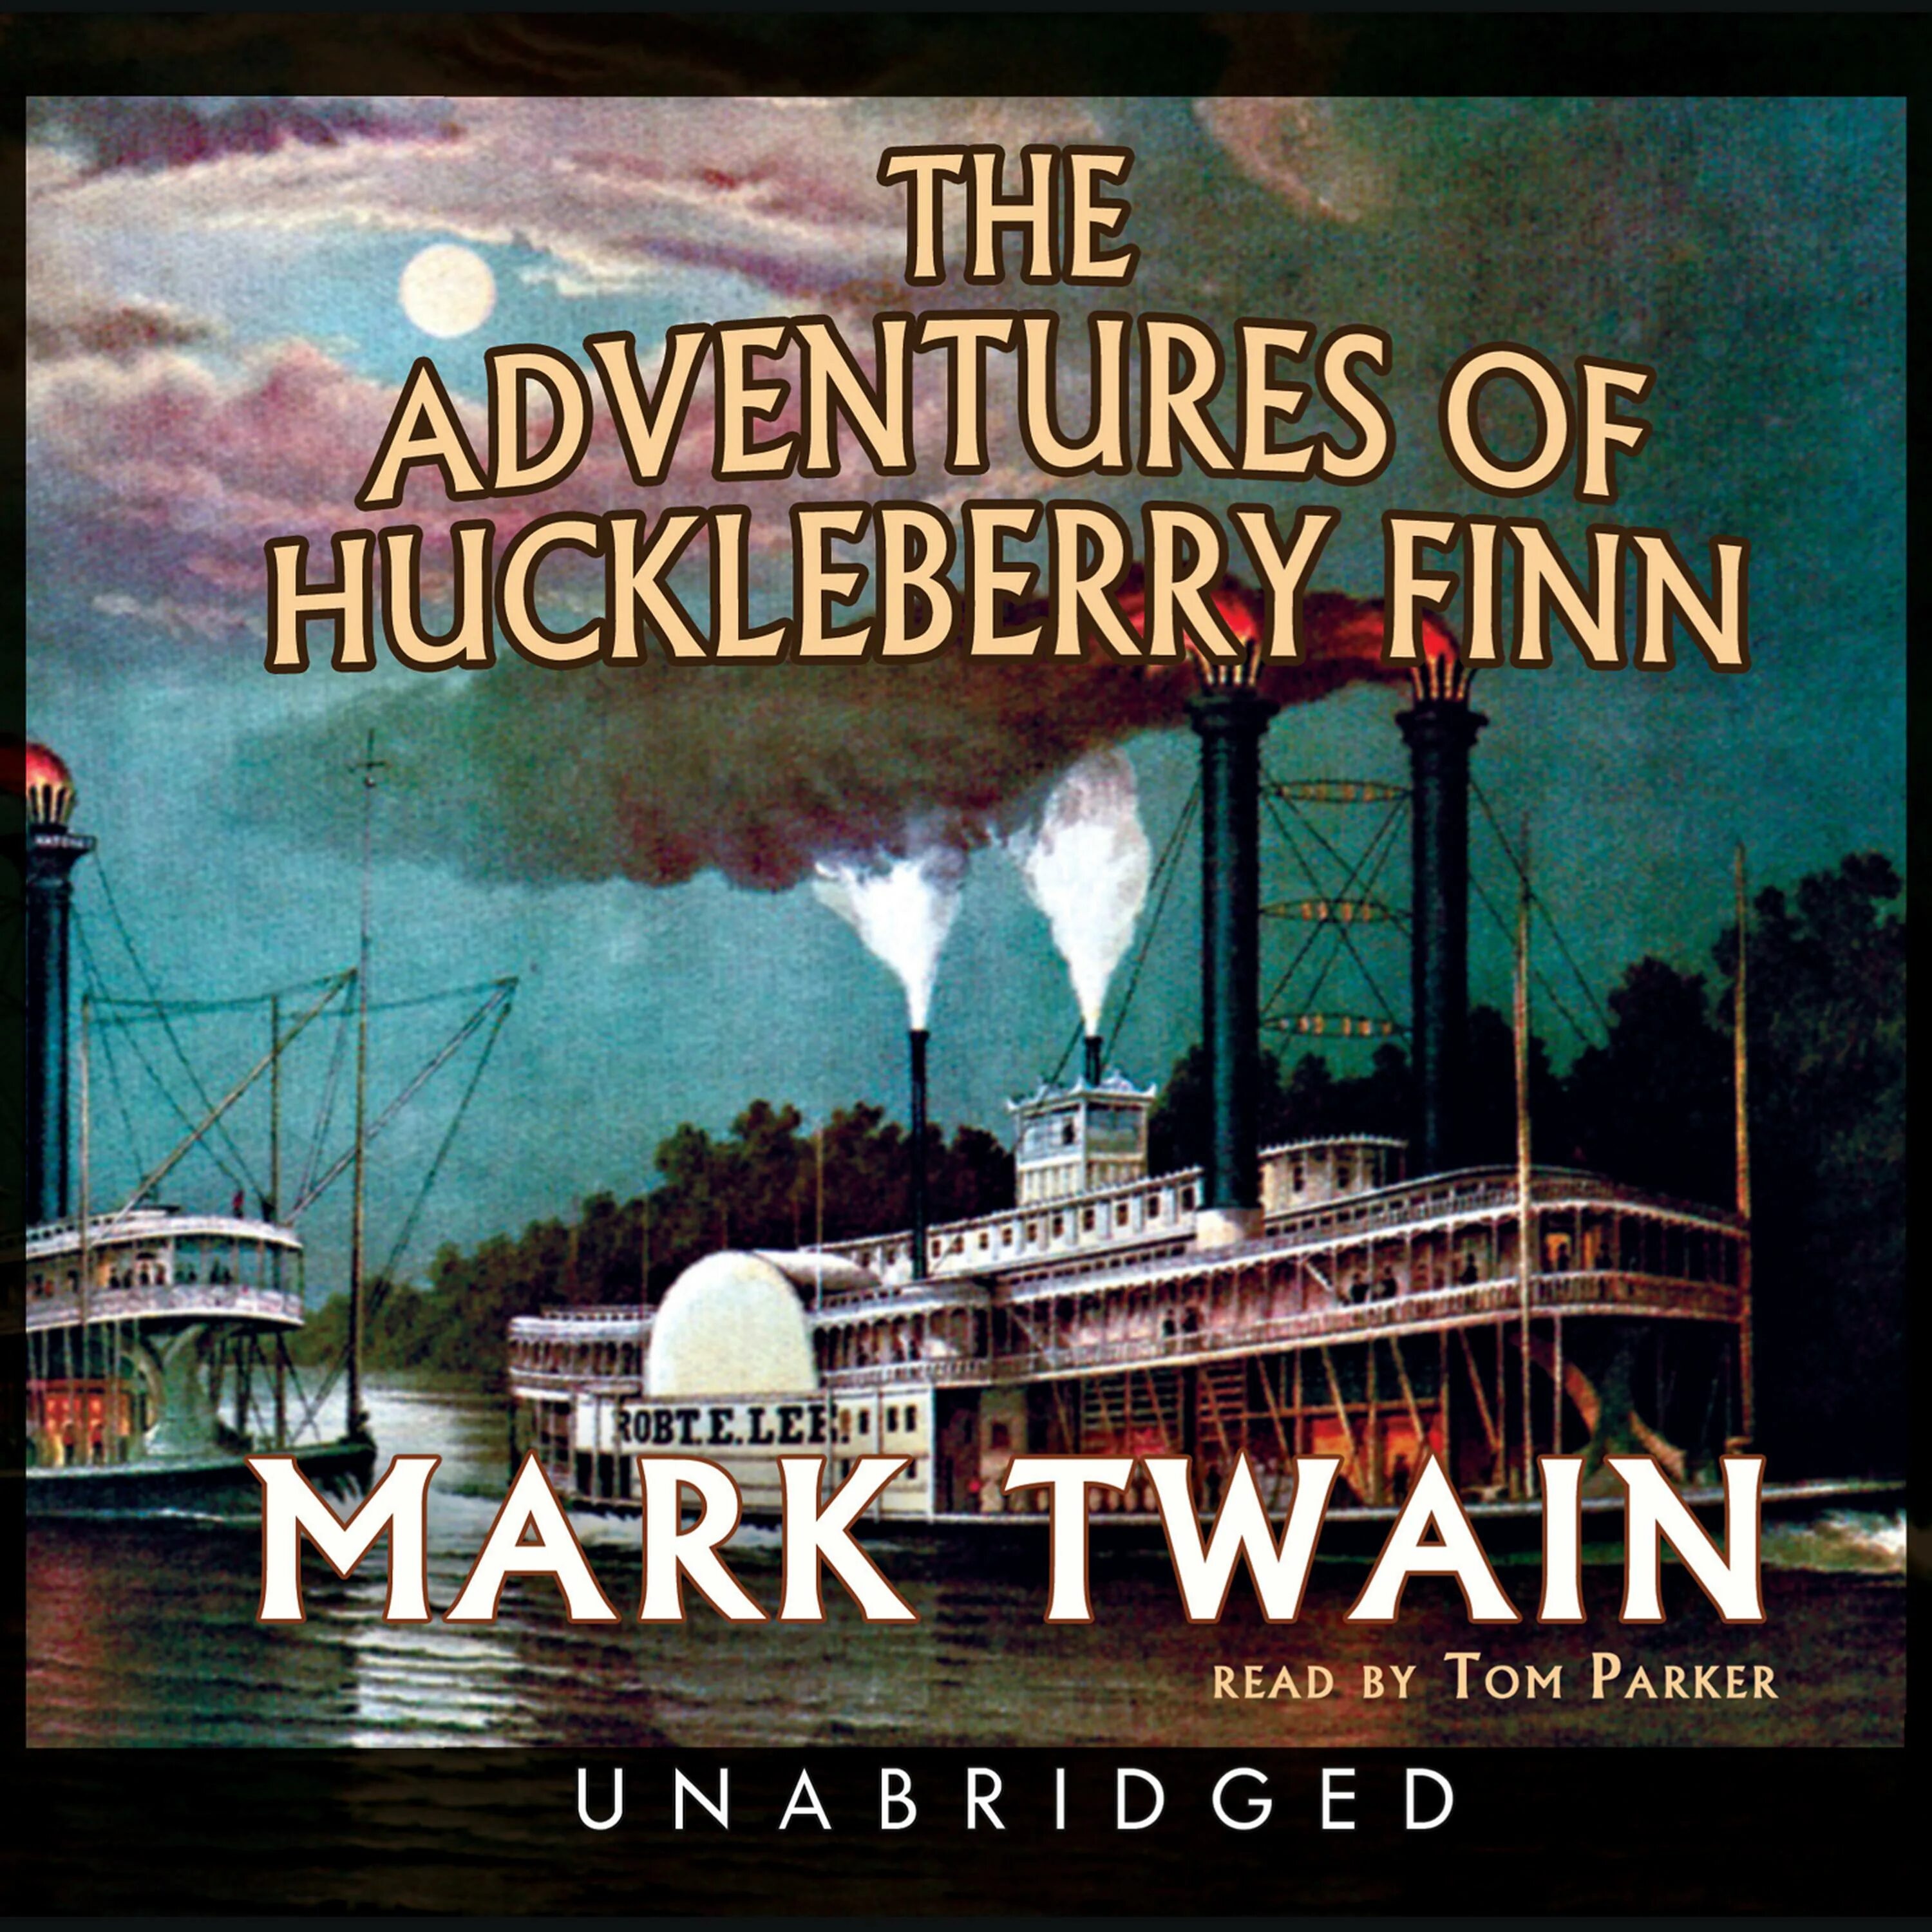 Adventures of Huckleberry Finn. Mark Twain Finn. The Adventures of Huckleberry Finn by Mark Twain. Dventures of Huckleberry Finn. The adventures of huckleberry finn mark twain